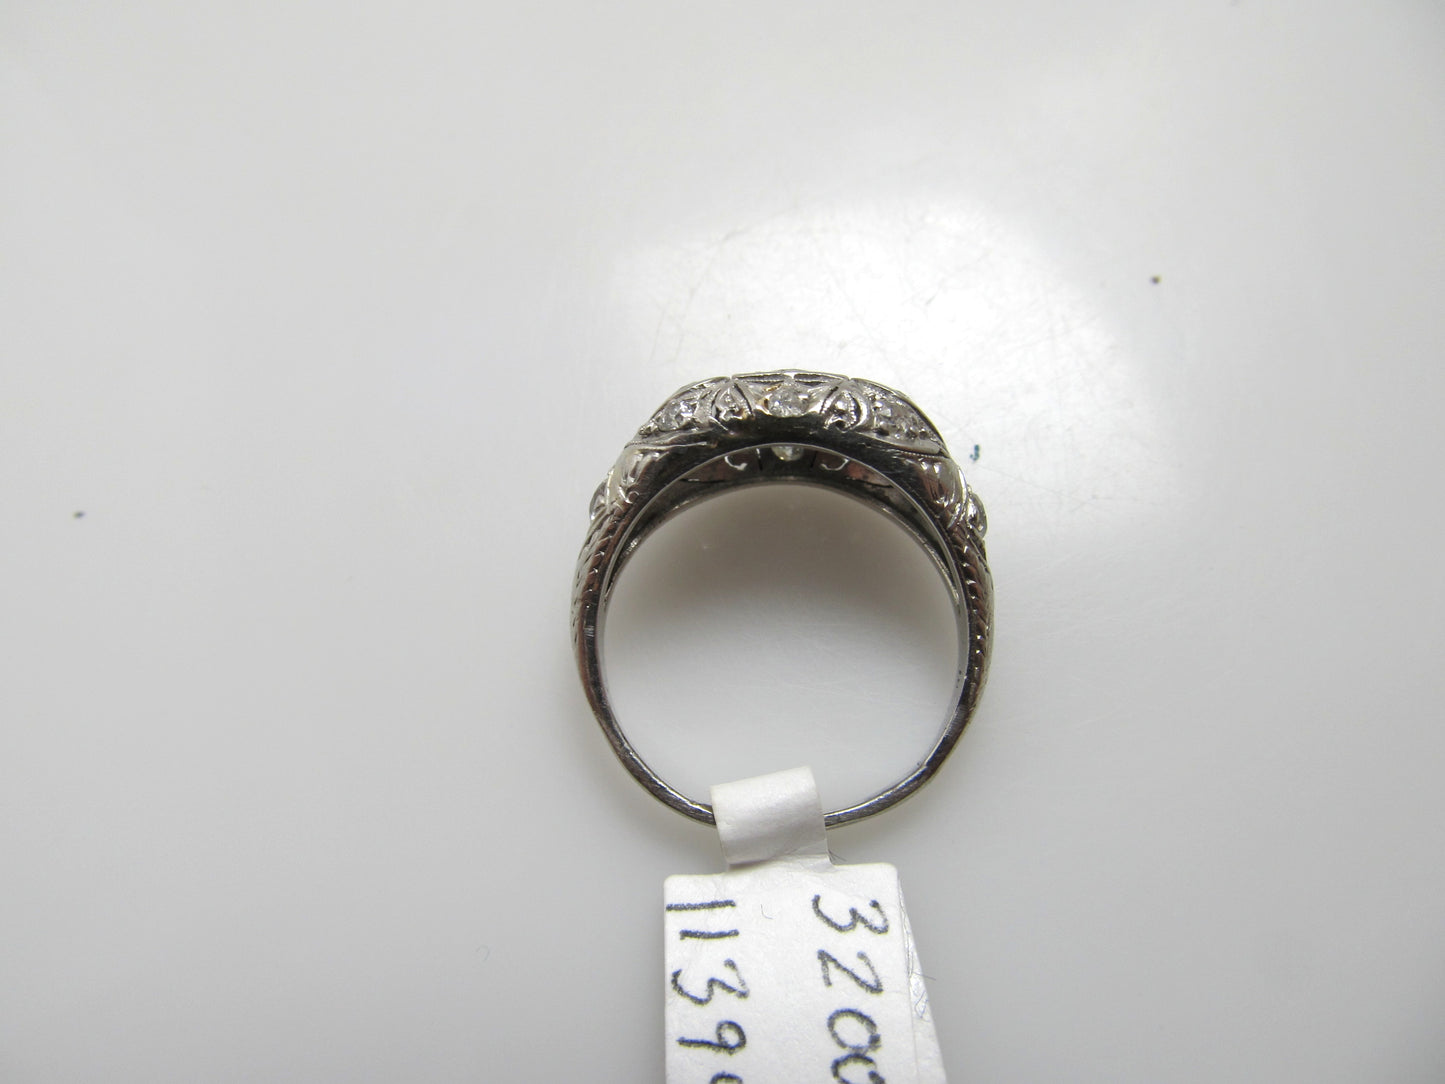 Antique platinum filigree diamond dome ring